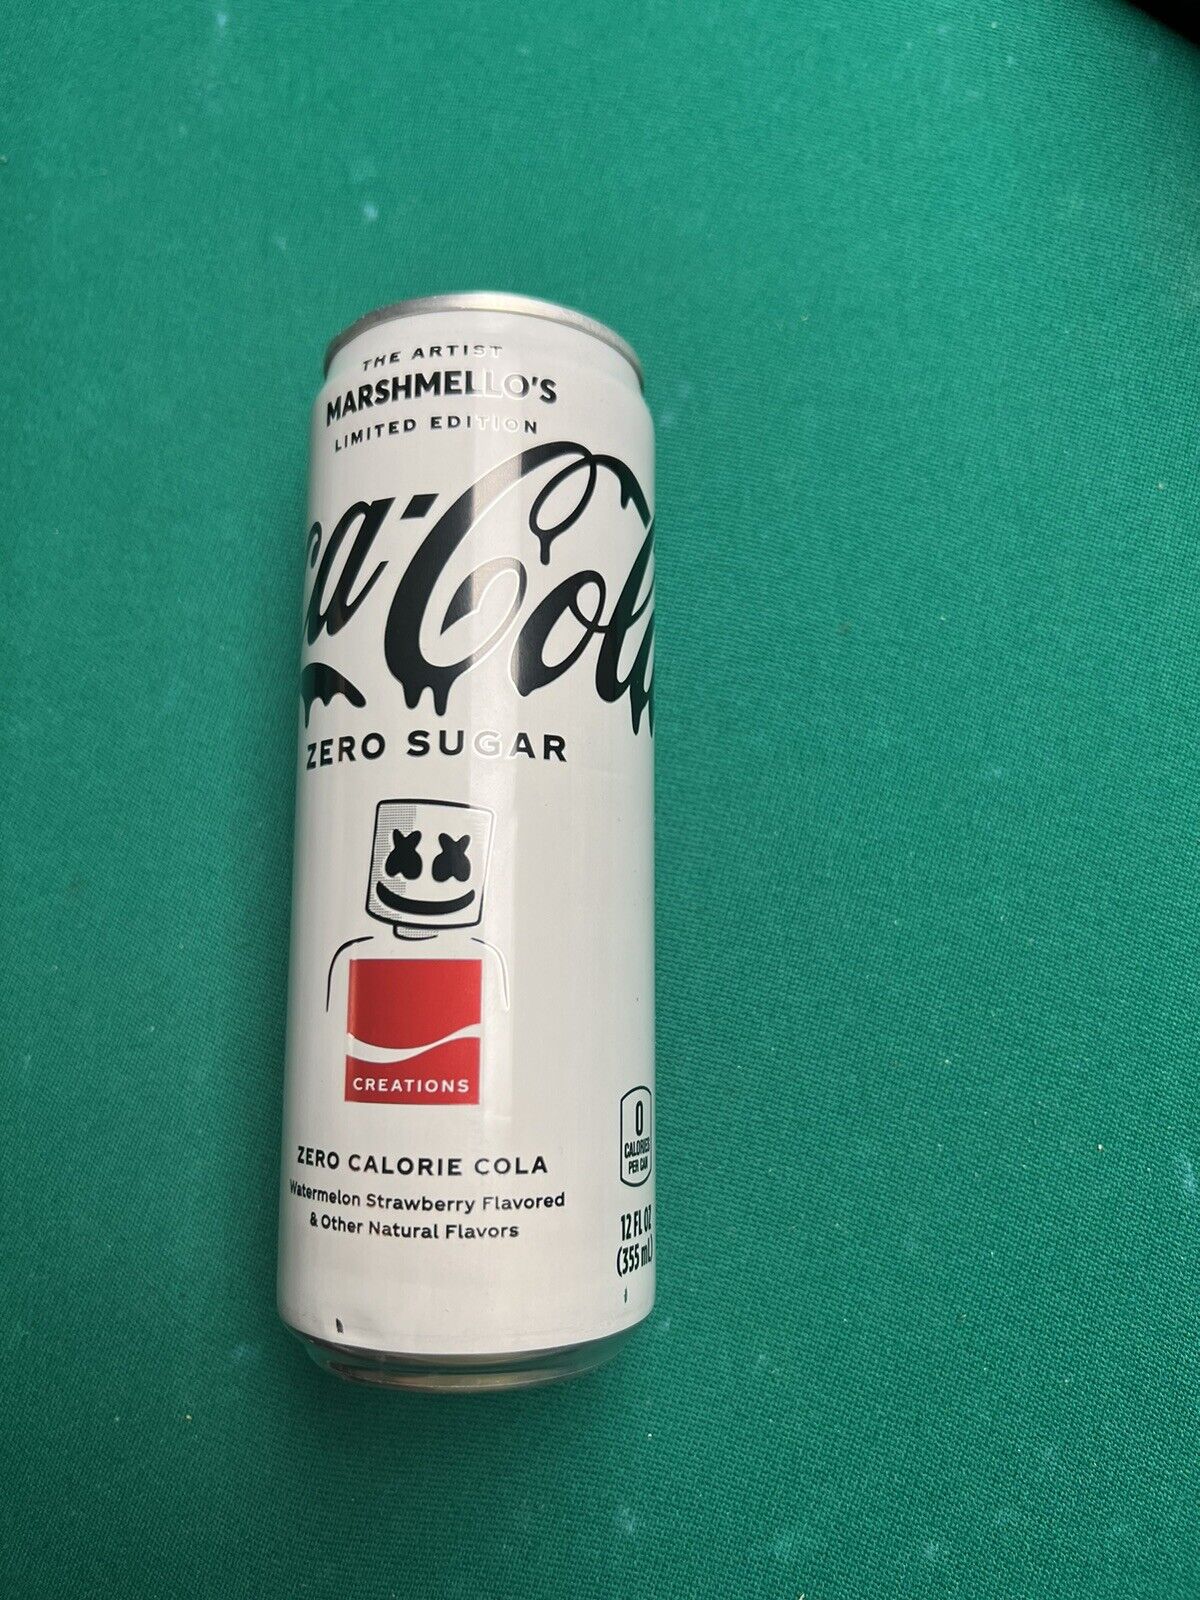 COCA-COLA Marshmallow Artist Creations Limited Edition Coke Zero Sugar Limited